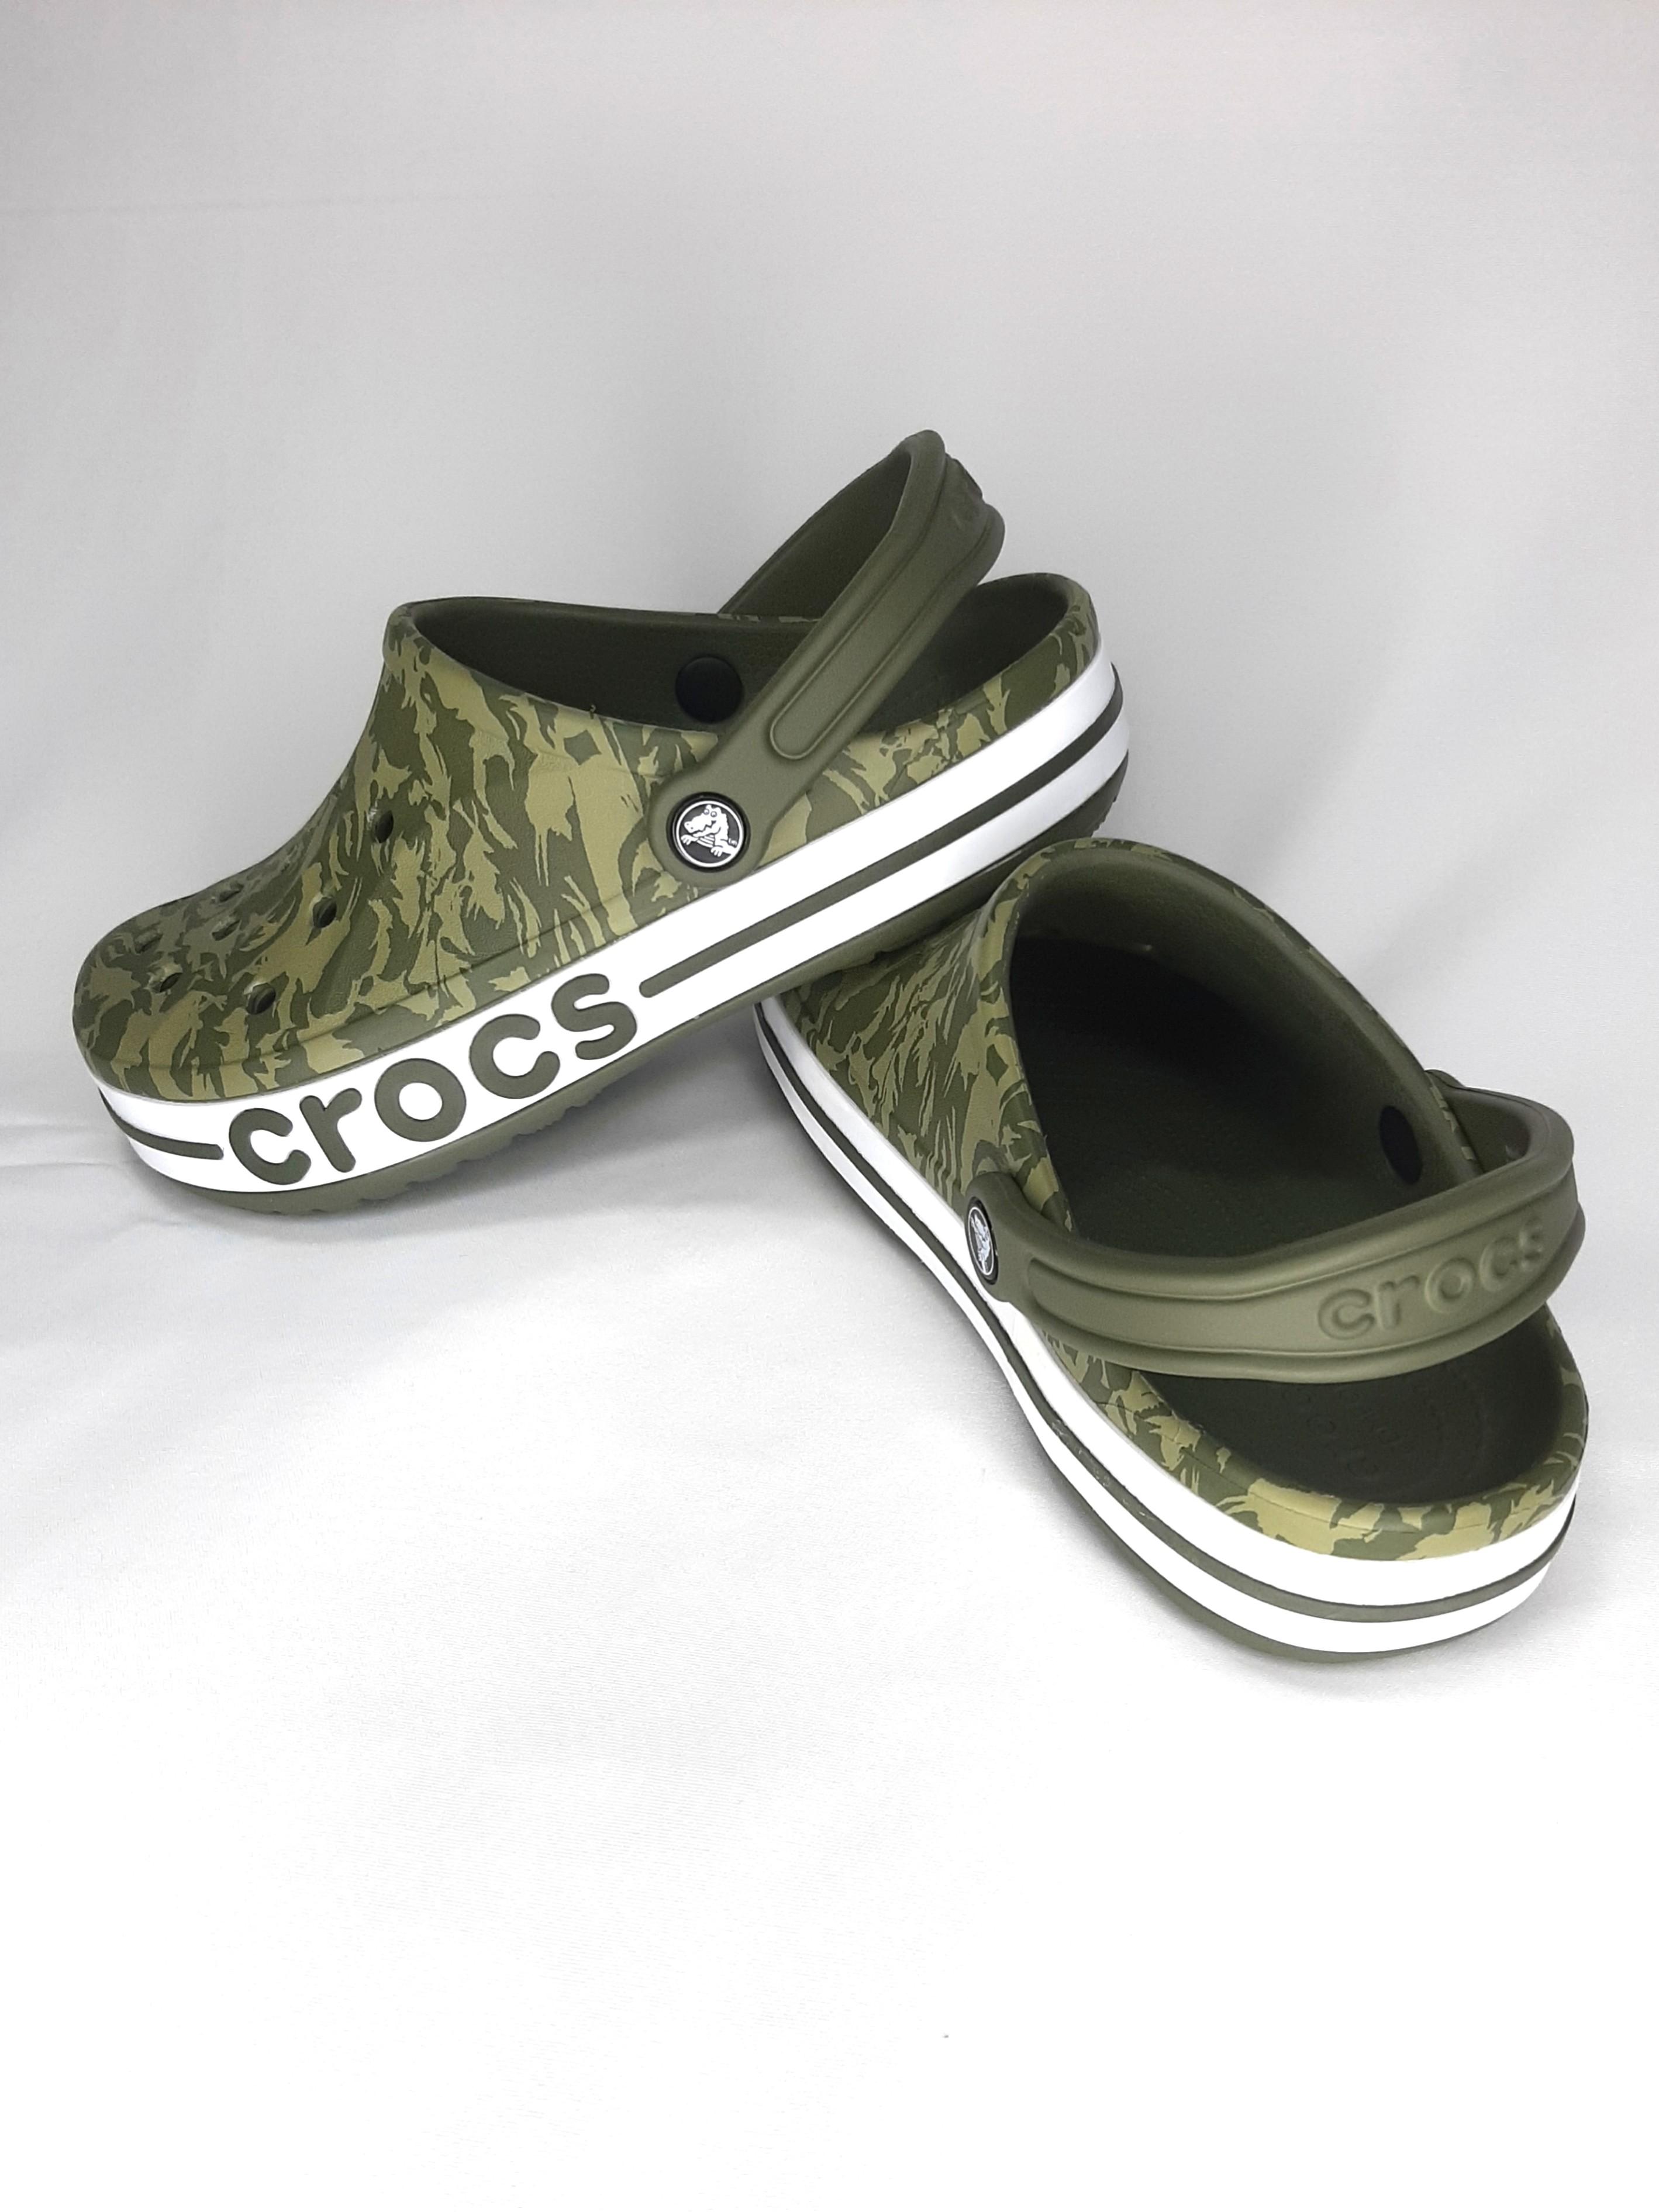 croc clogs on sale